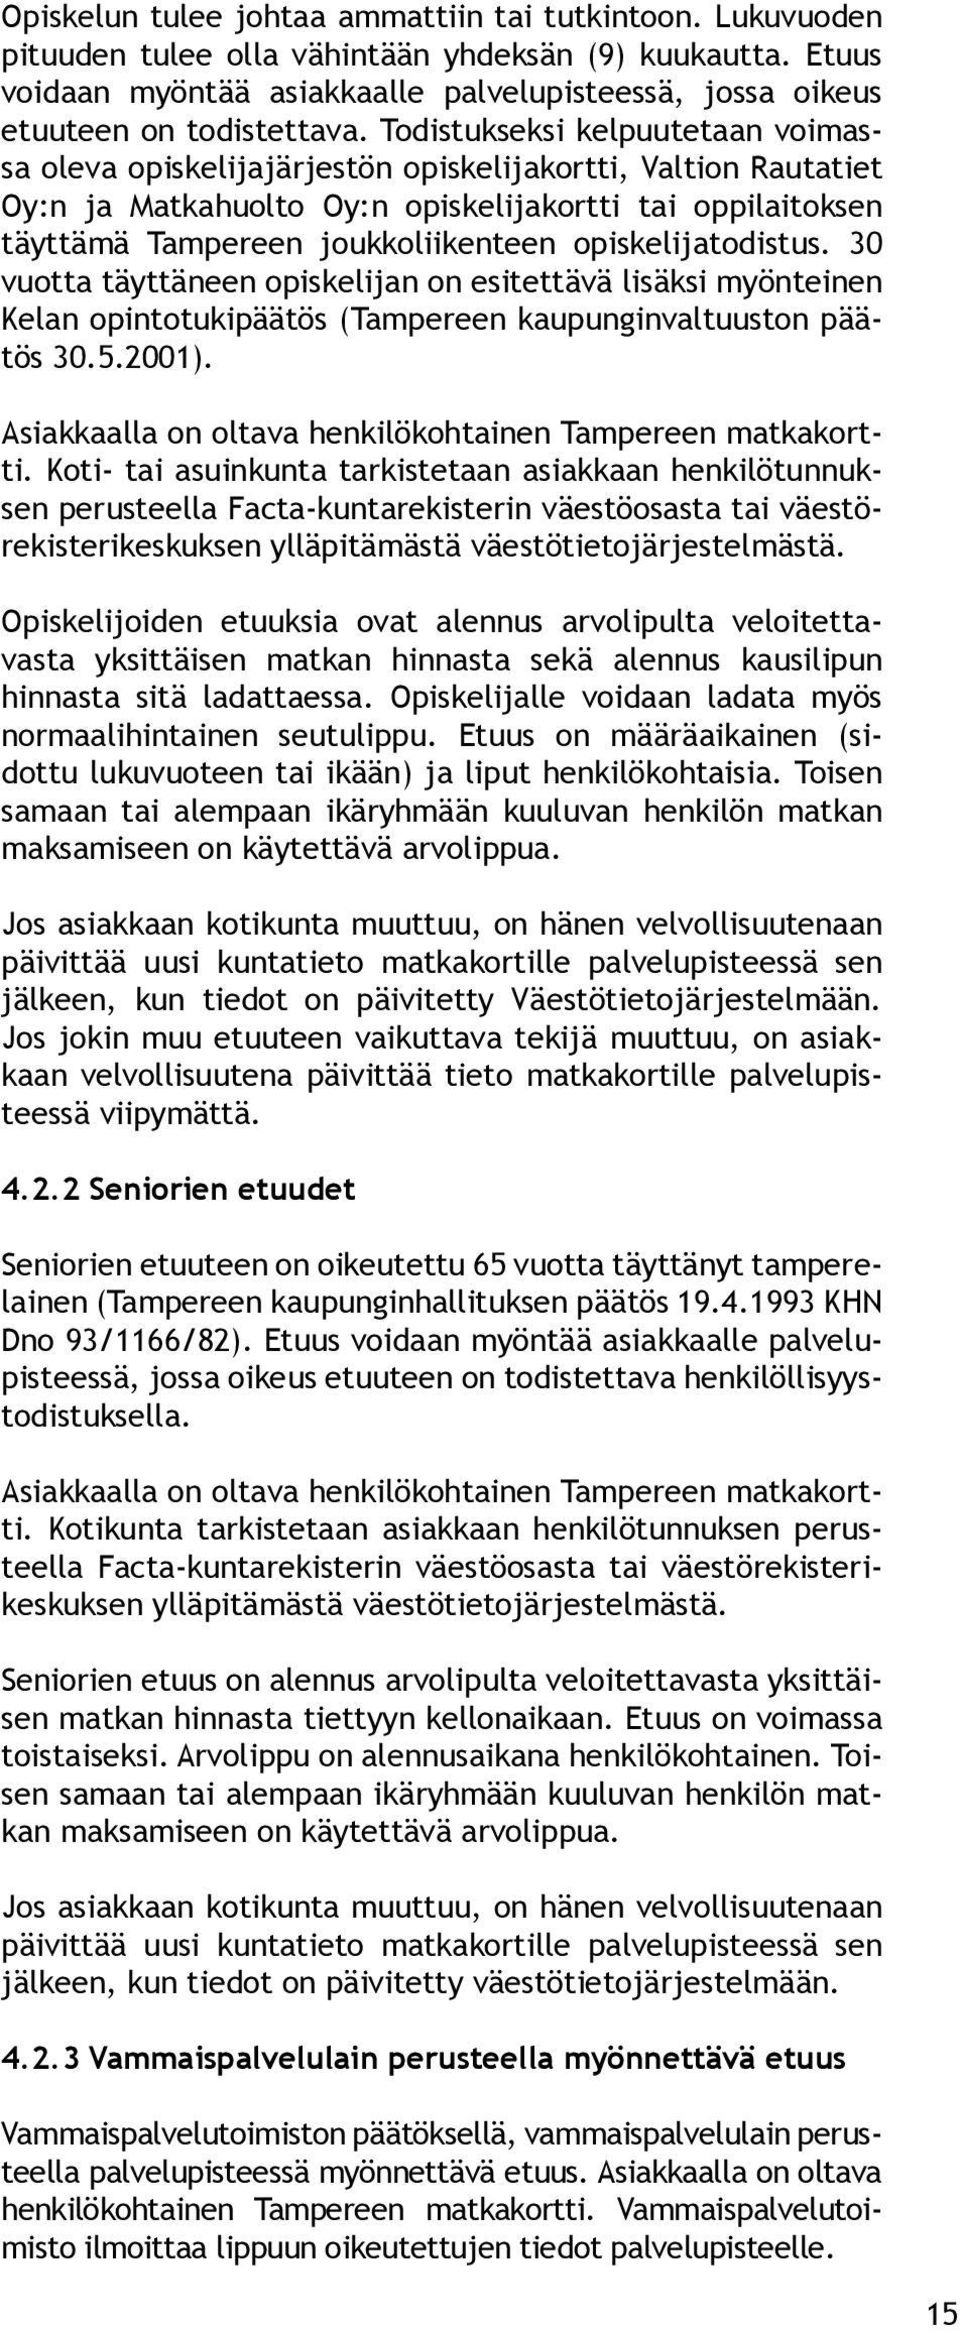 Todistukseksi kelpuutetaan voimassa oleva opiskelijajärjestön opiskelijakortti, Valtion Rautatiet Oy:n ja Matkahuolto Oy:n opiskelijakortti tai oppilaitoksen täyttämä Tampereen joukkoliikenteen